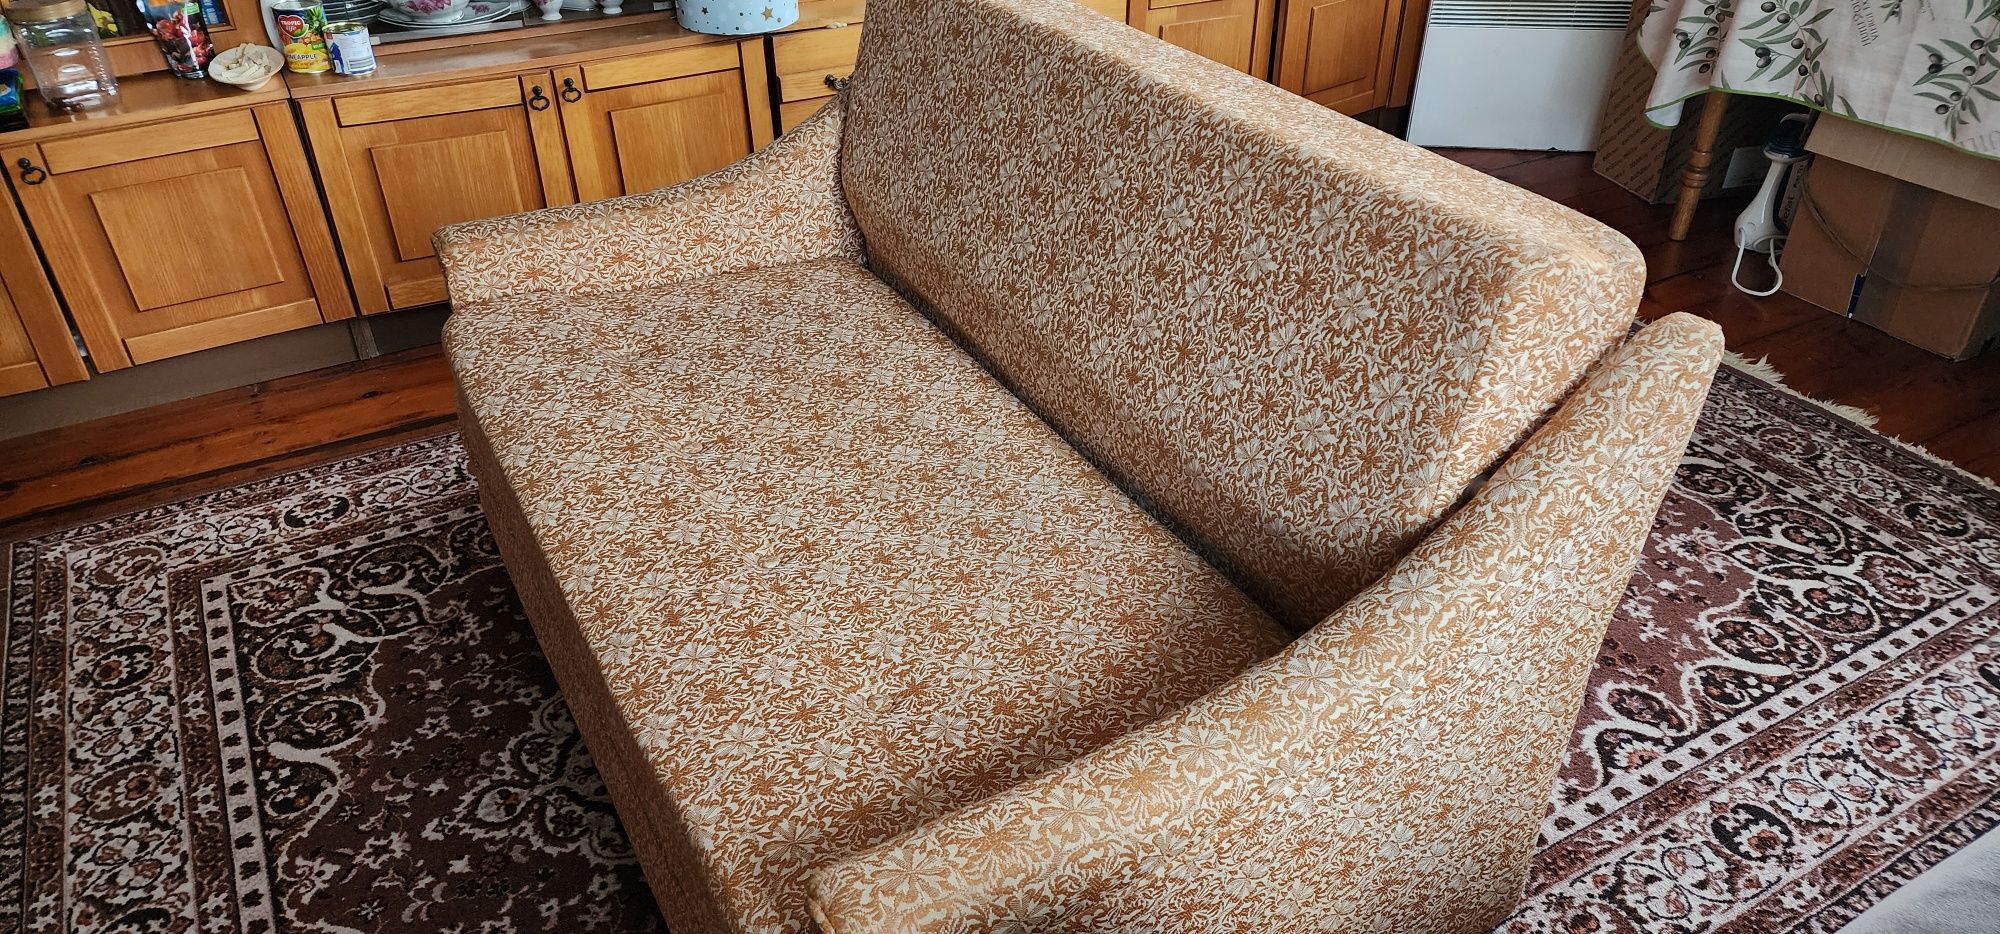 Продам комфортний диван малютка